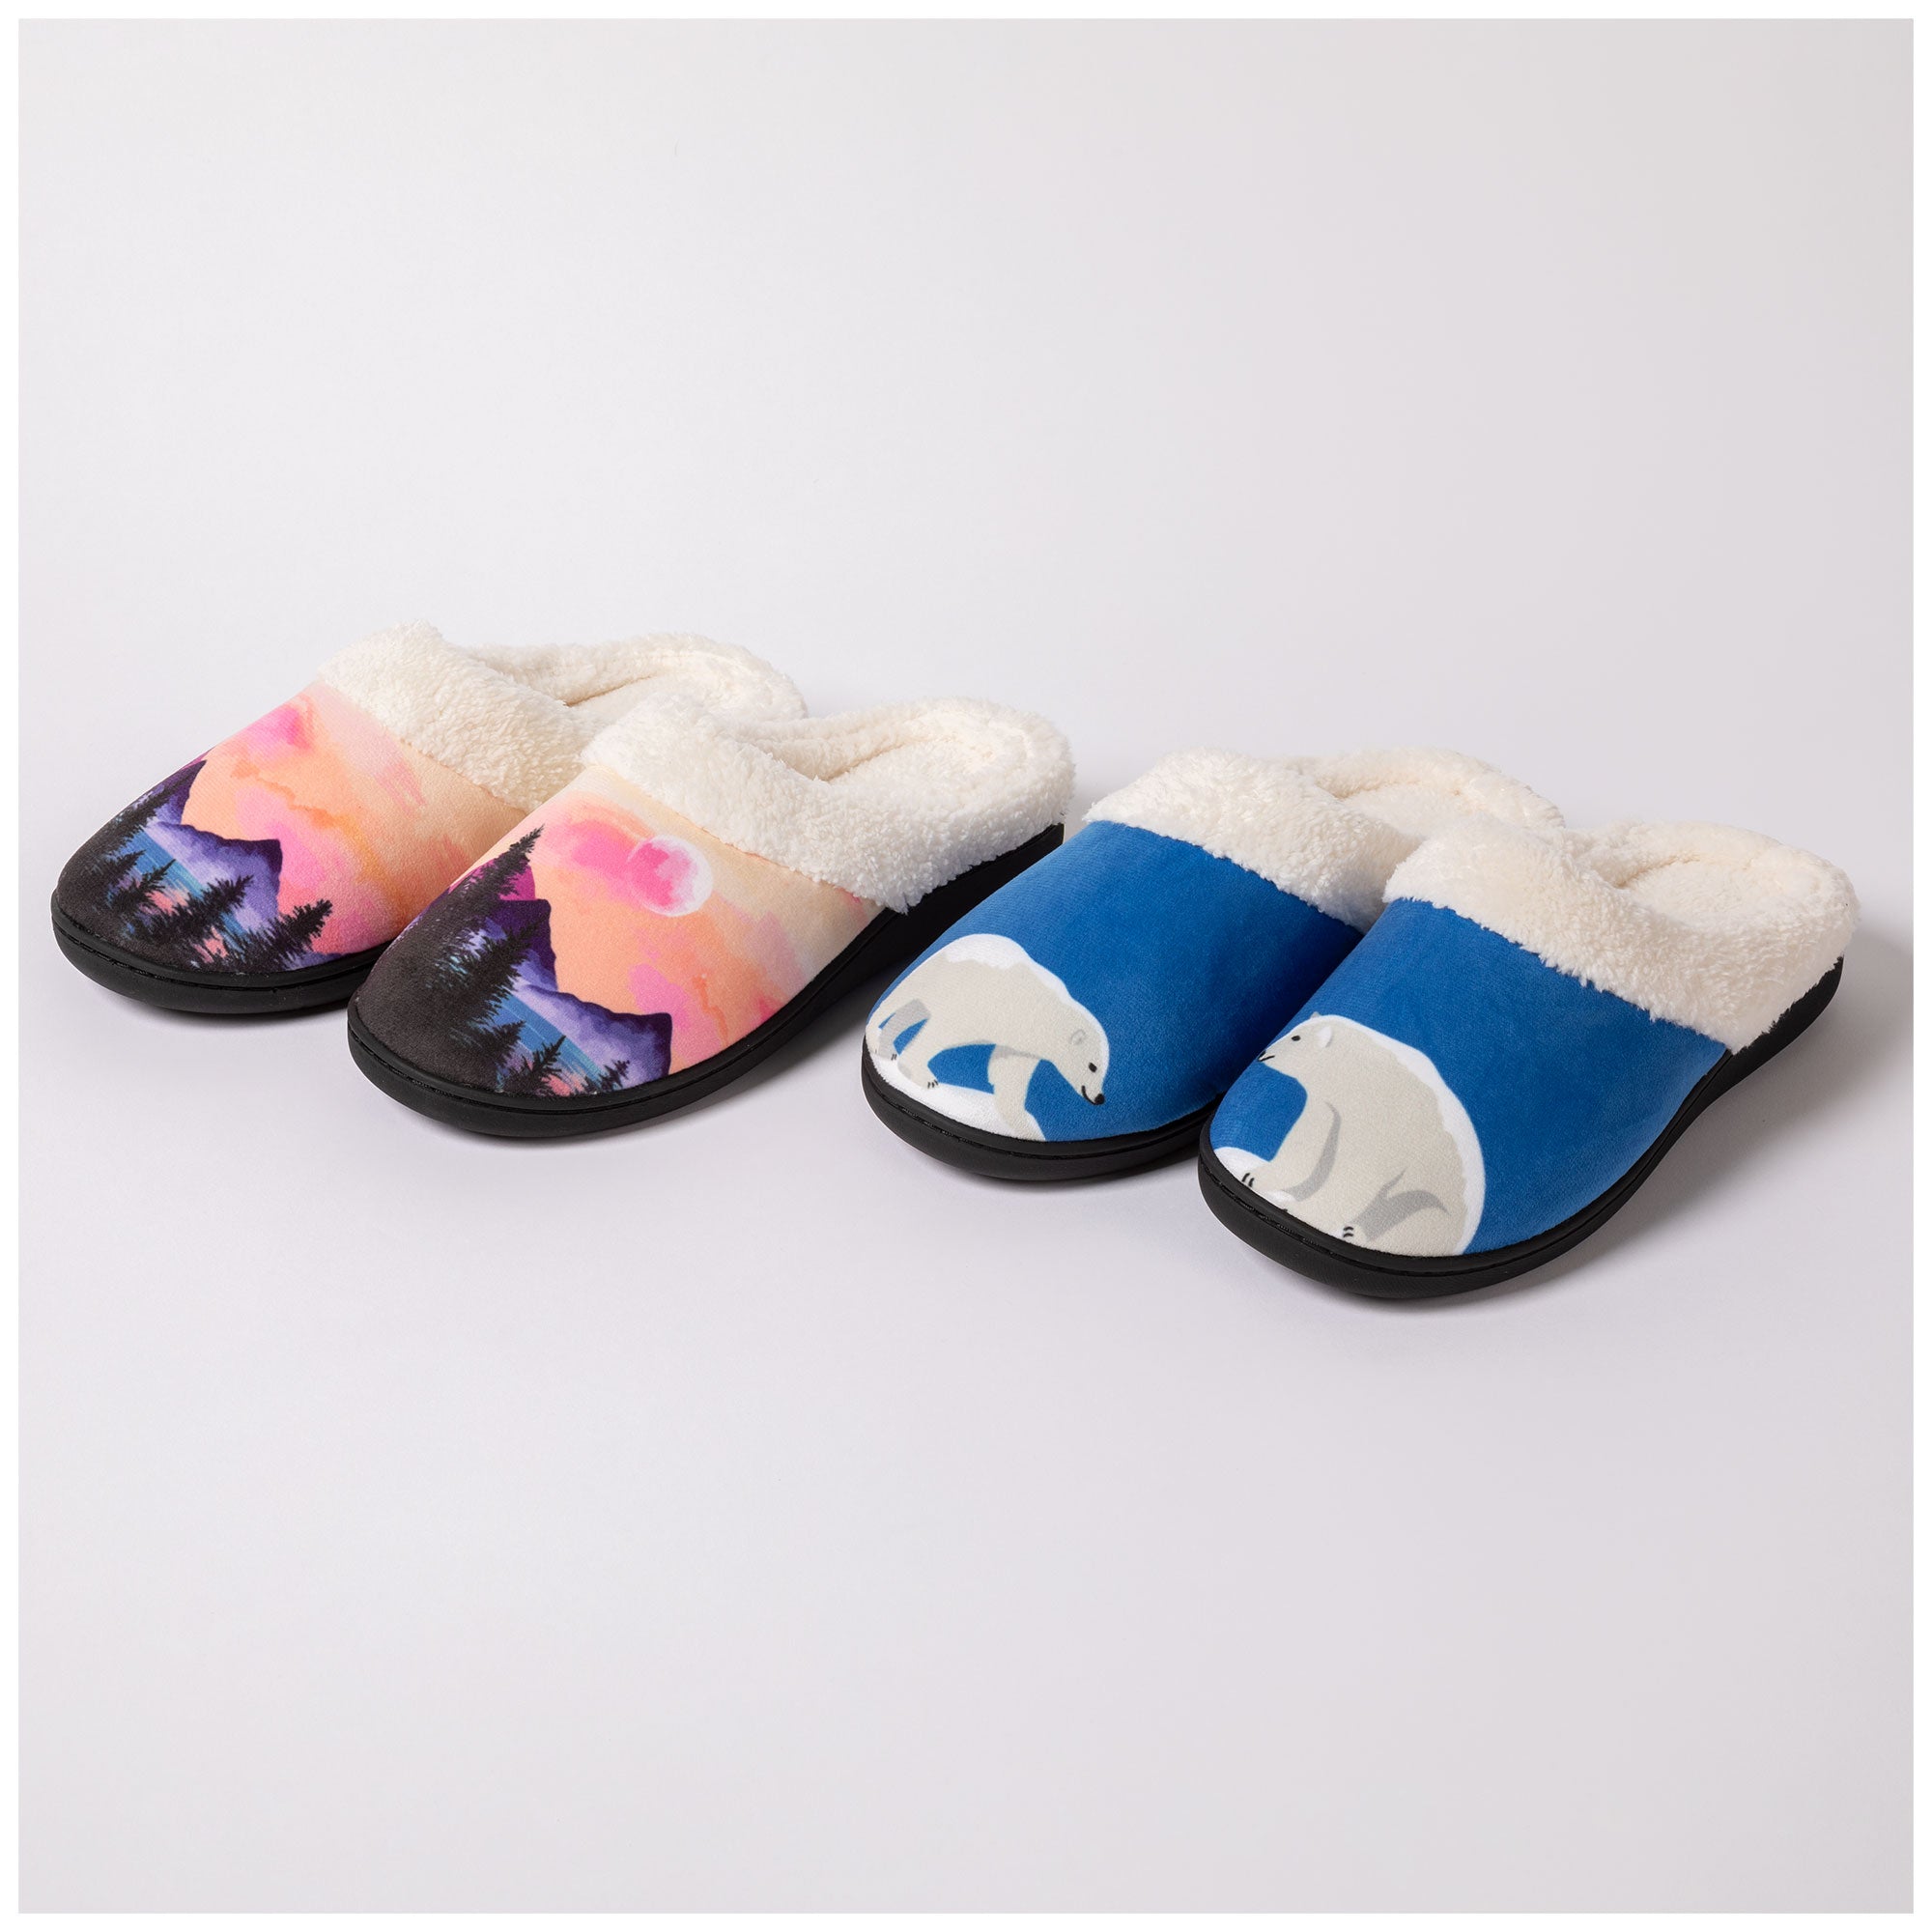 Dream Slide Slippers - Polar Bear - S